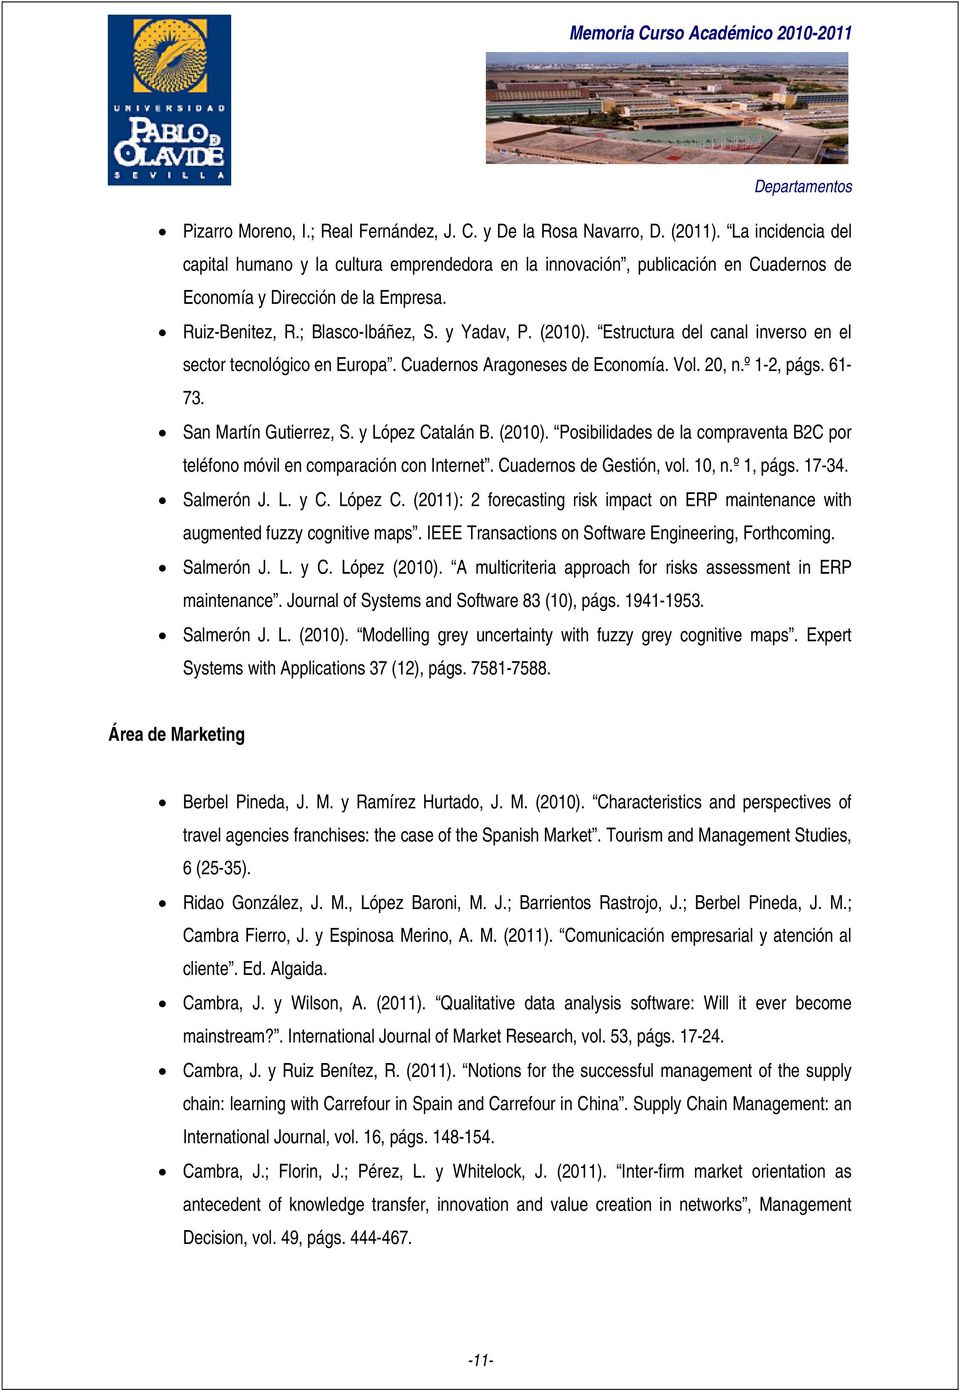 Estructura del canal inverso en el sector tecnológico en Europa. Cuadernos Aragoneses de Economía. Vol. 20, n.º 1-2, págs. 61-73. San Martín Gutierrez, S. y López Catalán B. (2010).